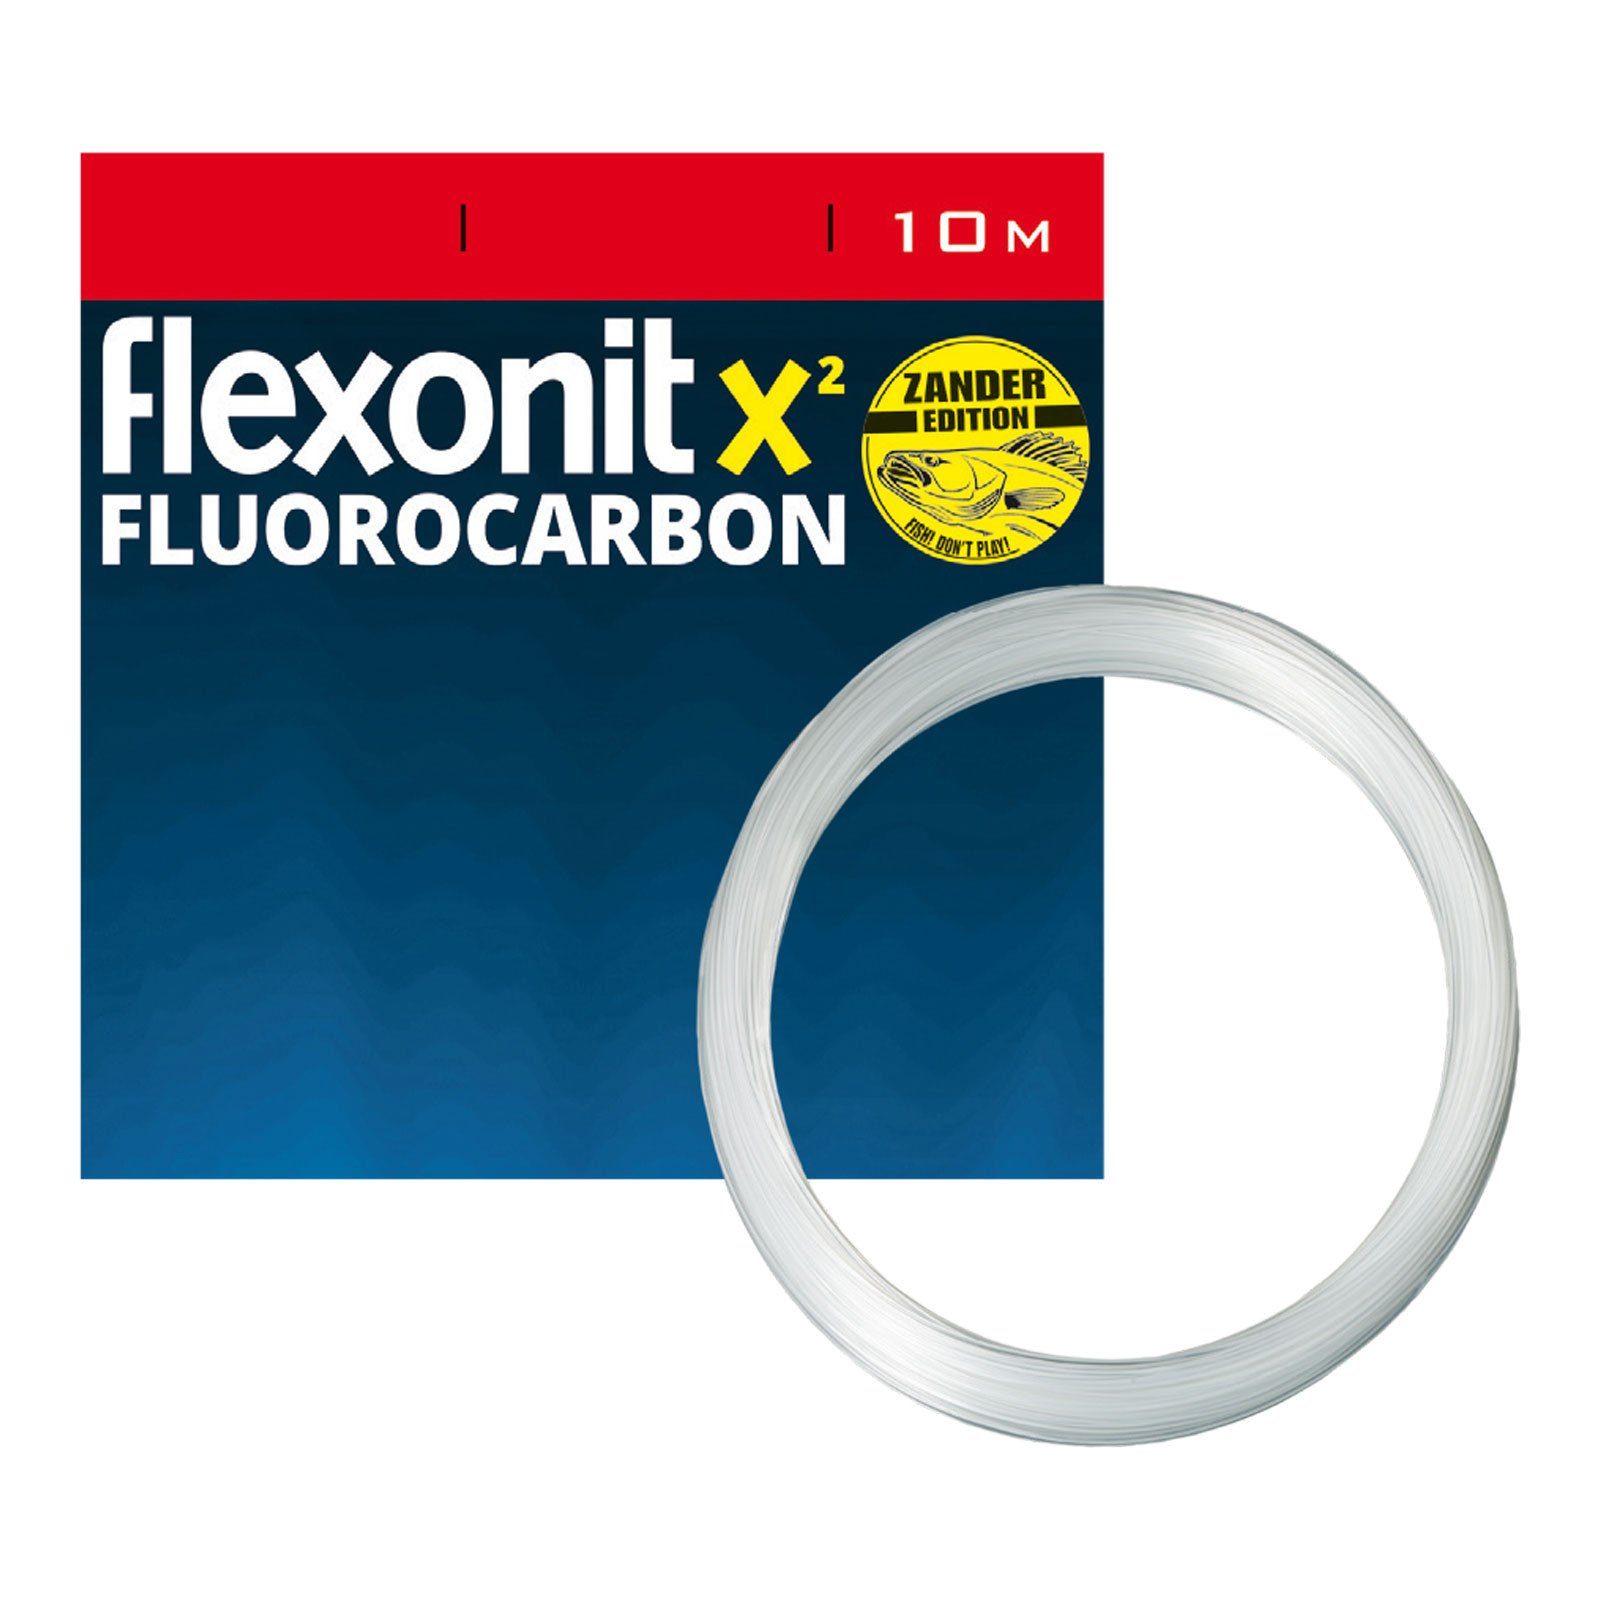 Länge, 10m Vorfachmaterial 10 9,8kg m X² Fluoro Zander Vorfachschnur, flexonit flexonit 0,40mm